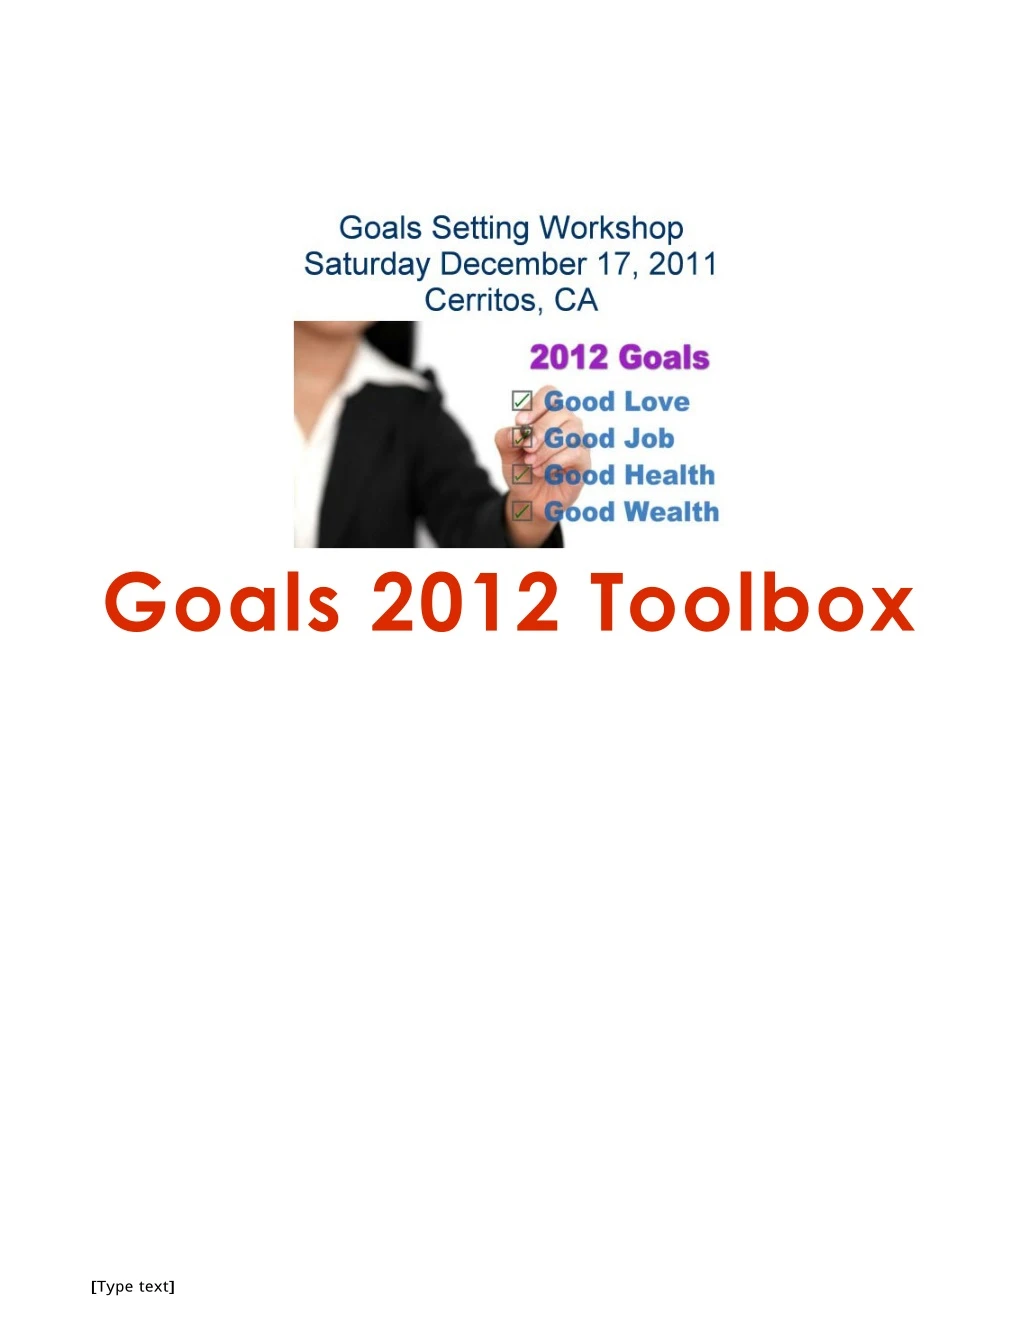 goals 2012 toolbox